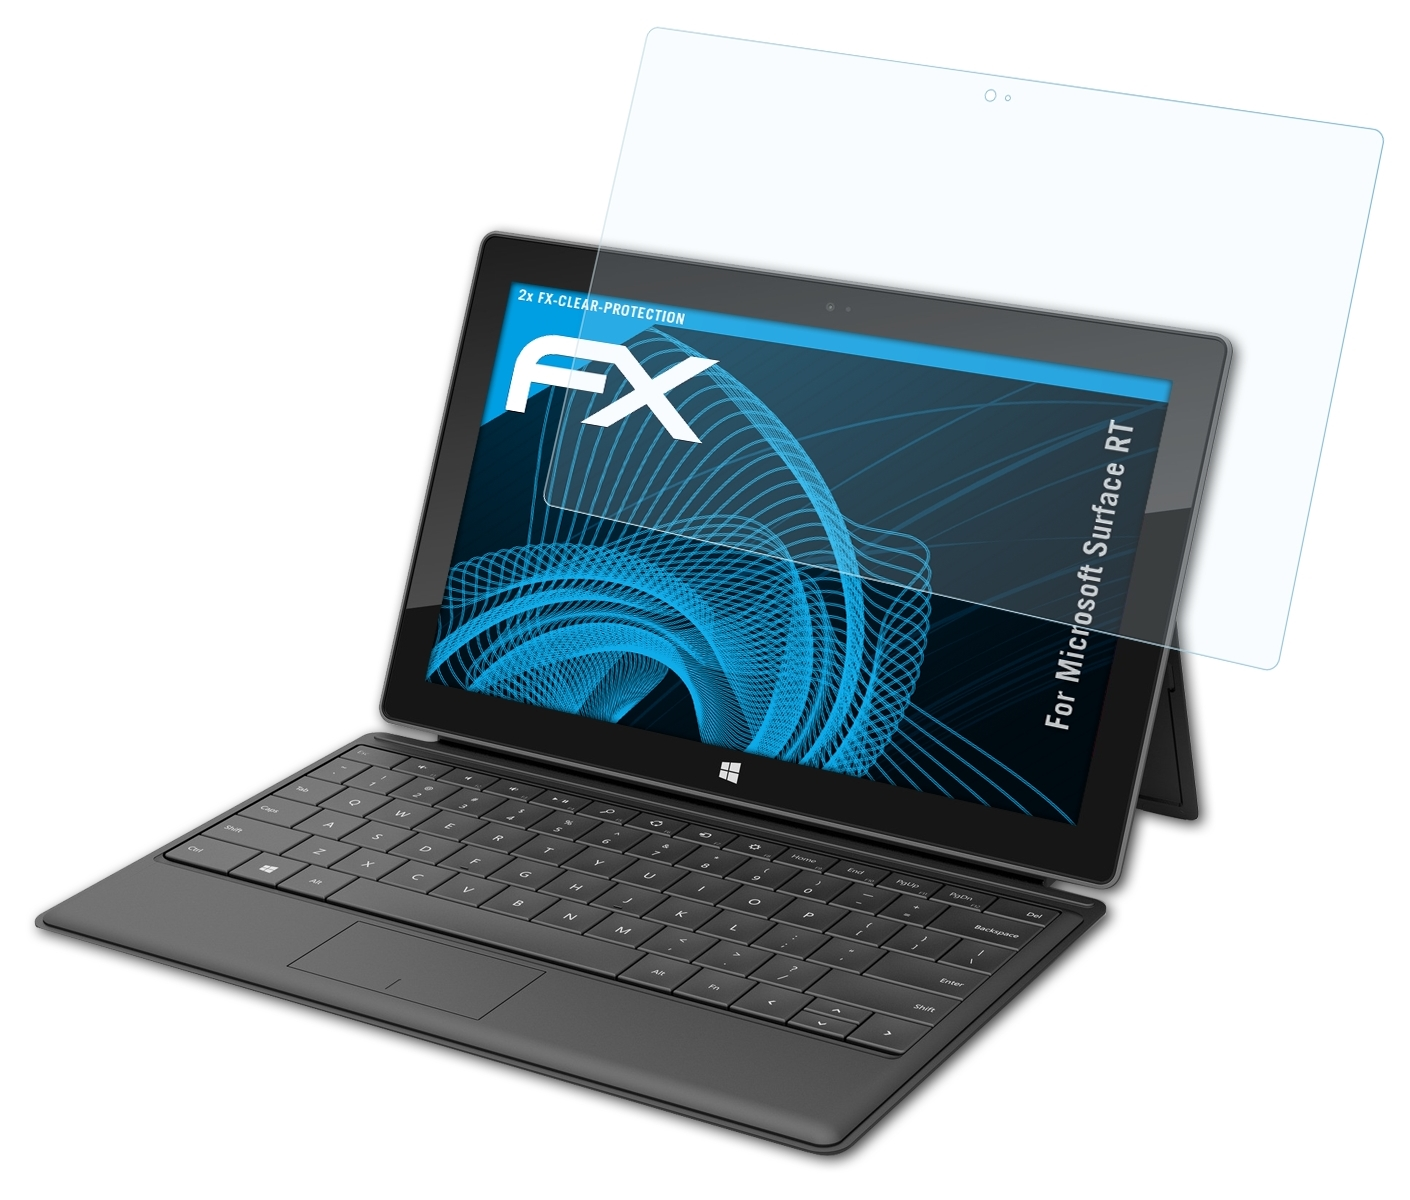 ATFOLIX 2x Microsoft Surface Displayschutz(für RT) FX-Clear